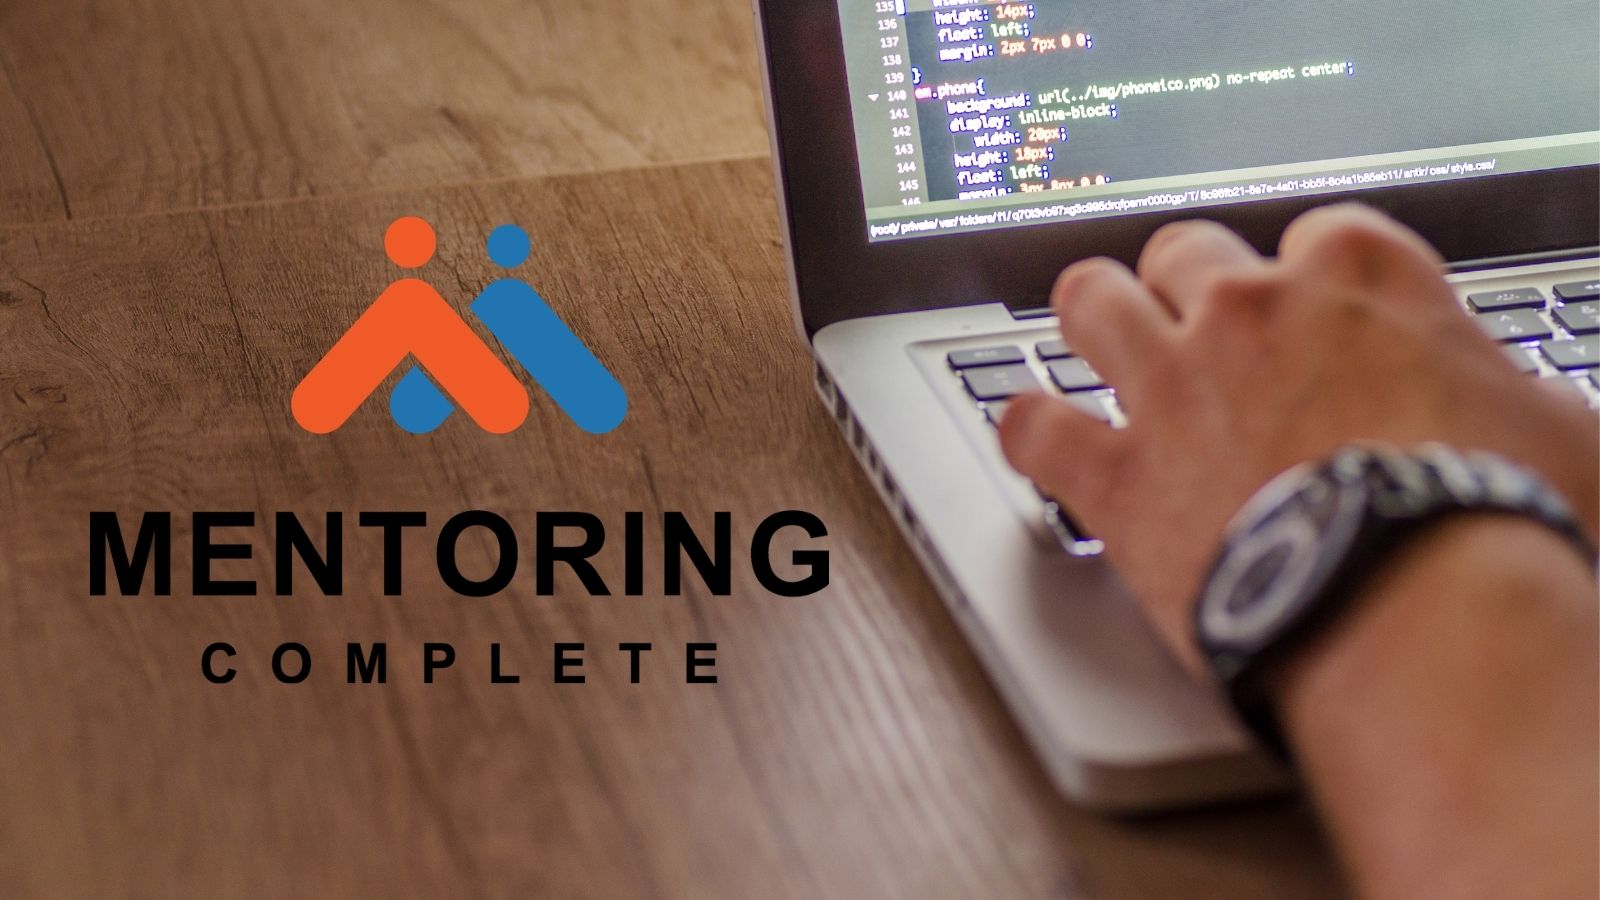 Online mentoring software - Mentoring Complete